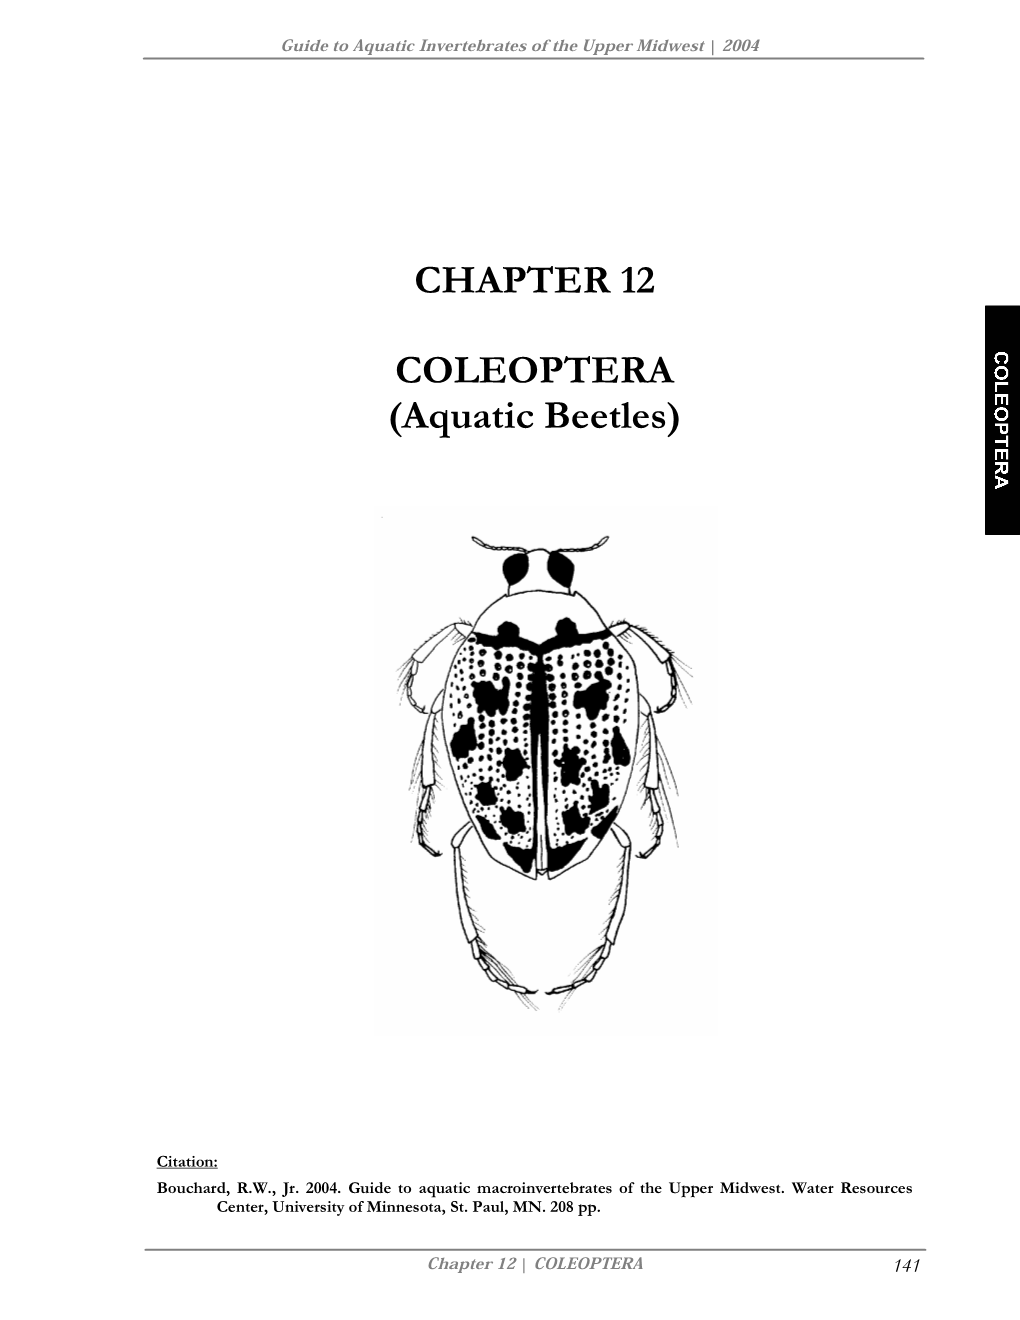 CHAPTER 12 COLEOPTERA (Aquatic Beetles)